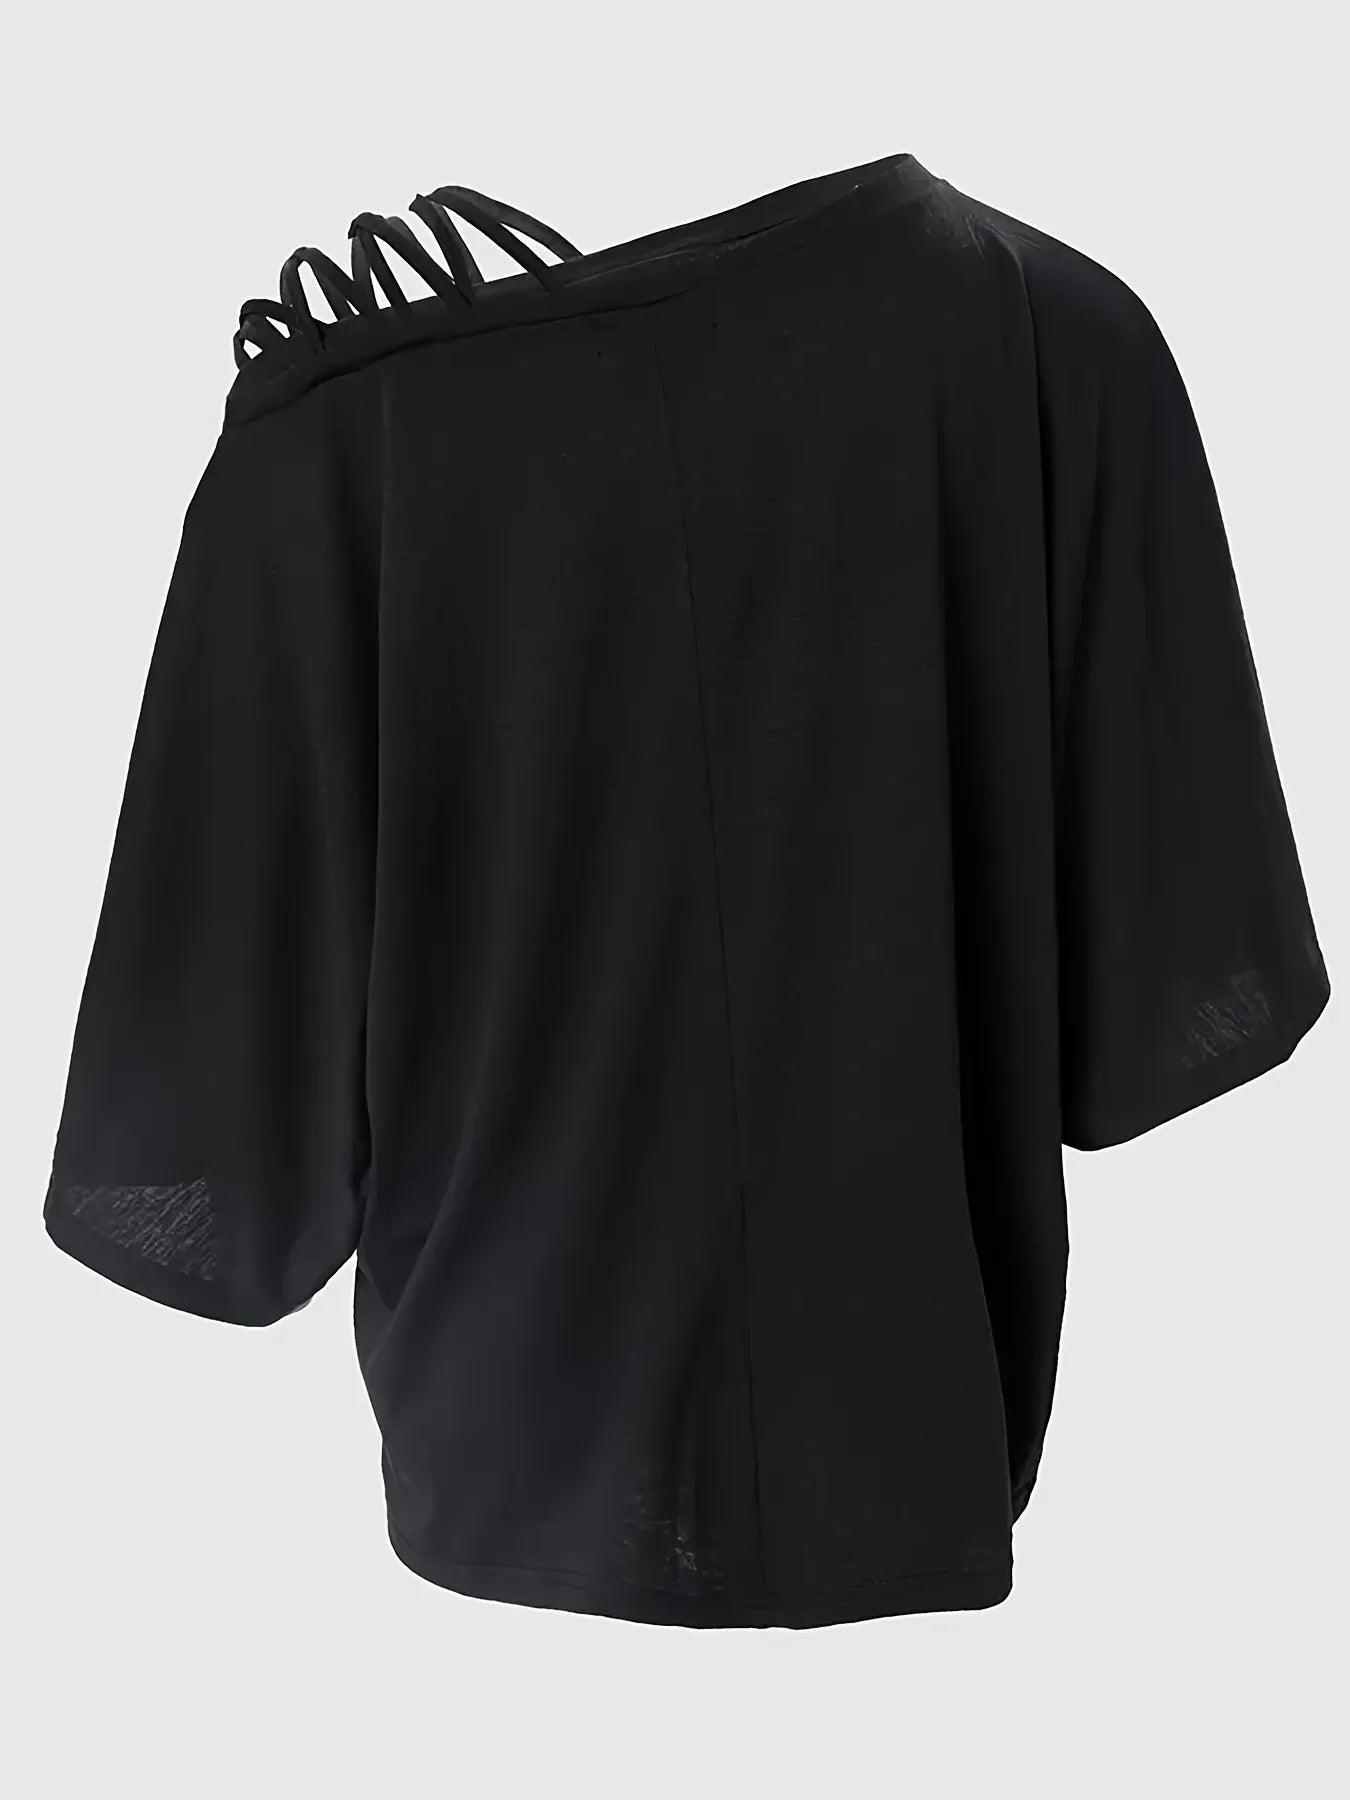 Camiseta fria com detalhe cruzado nas costas - Femmes